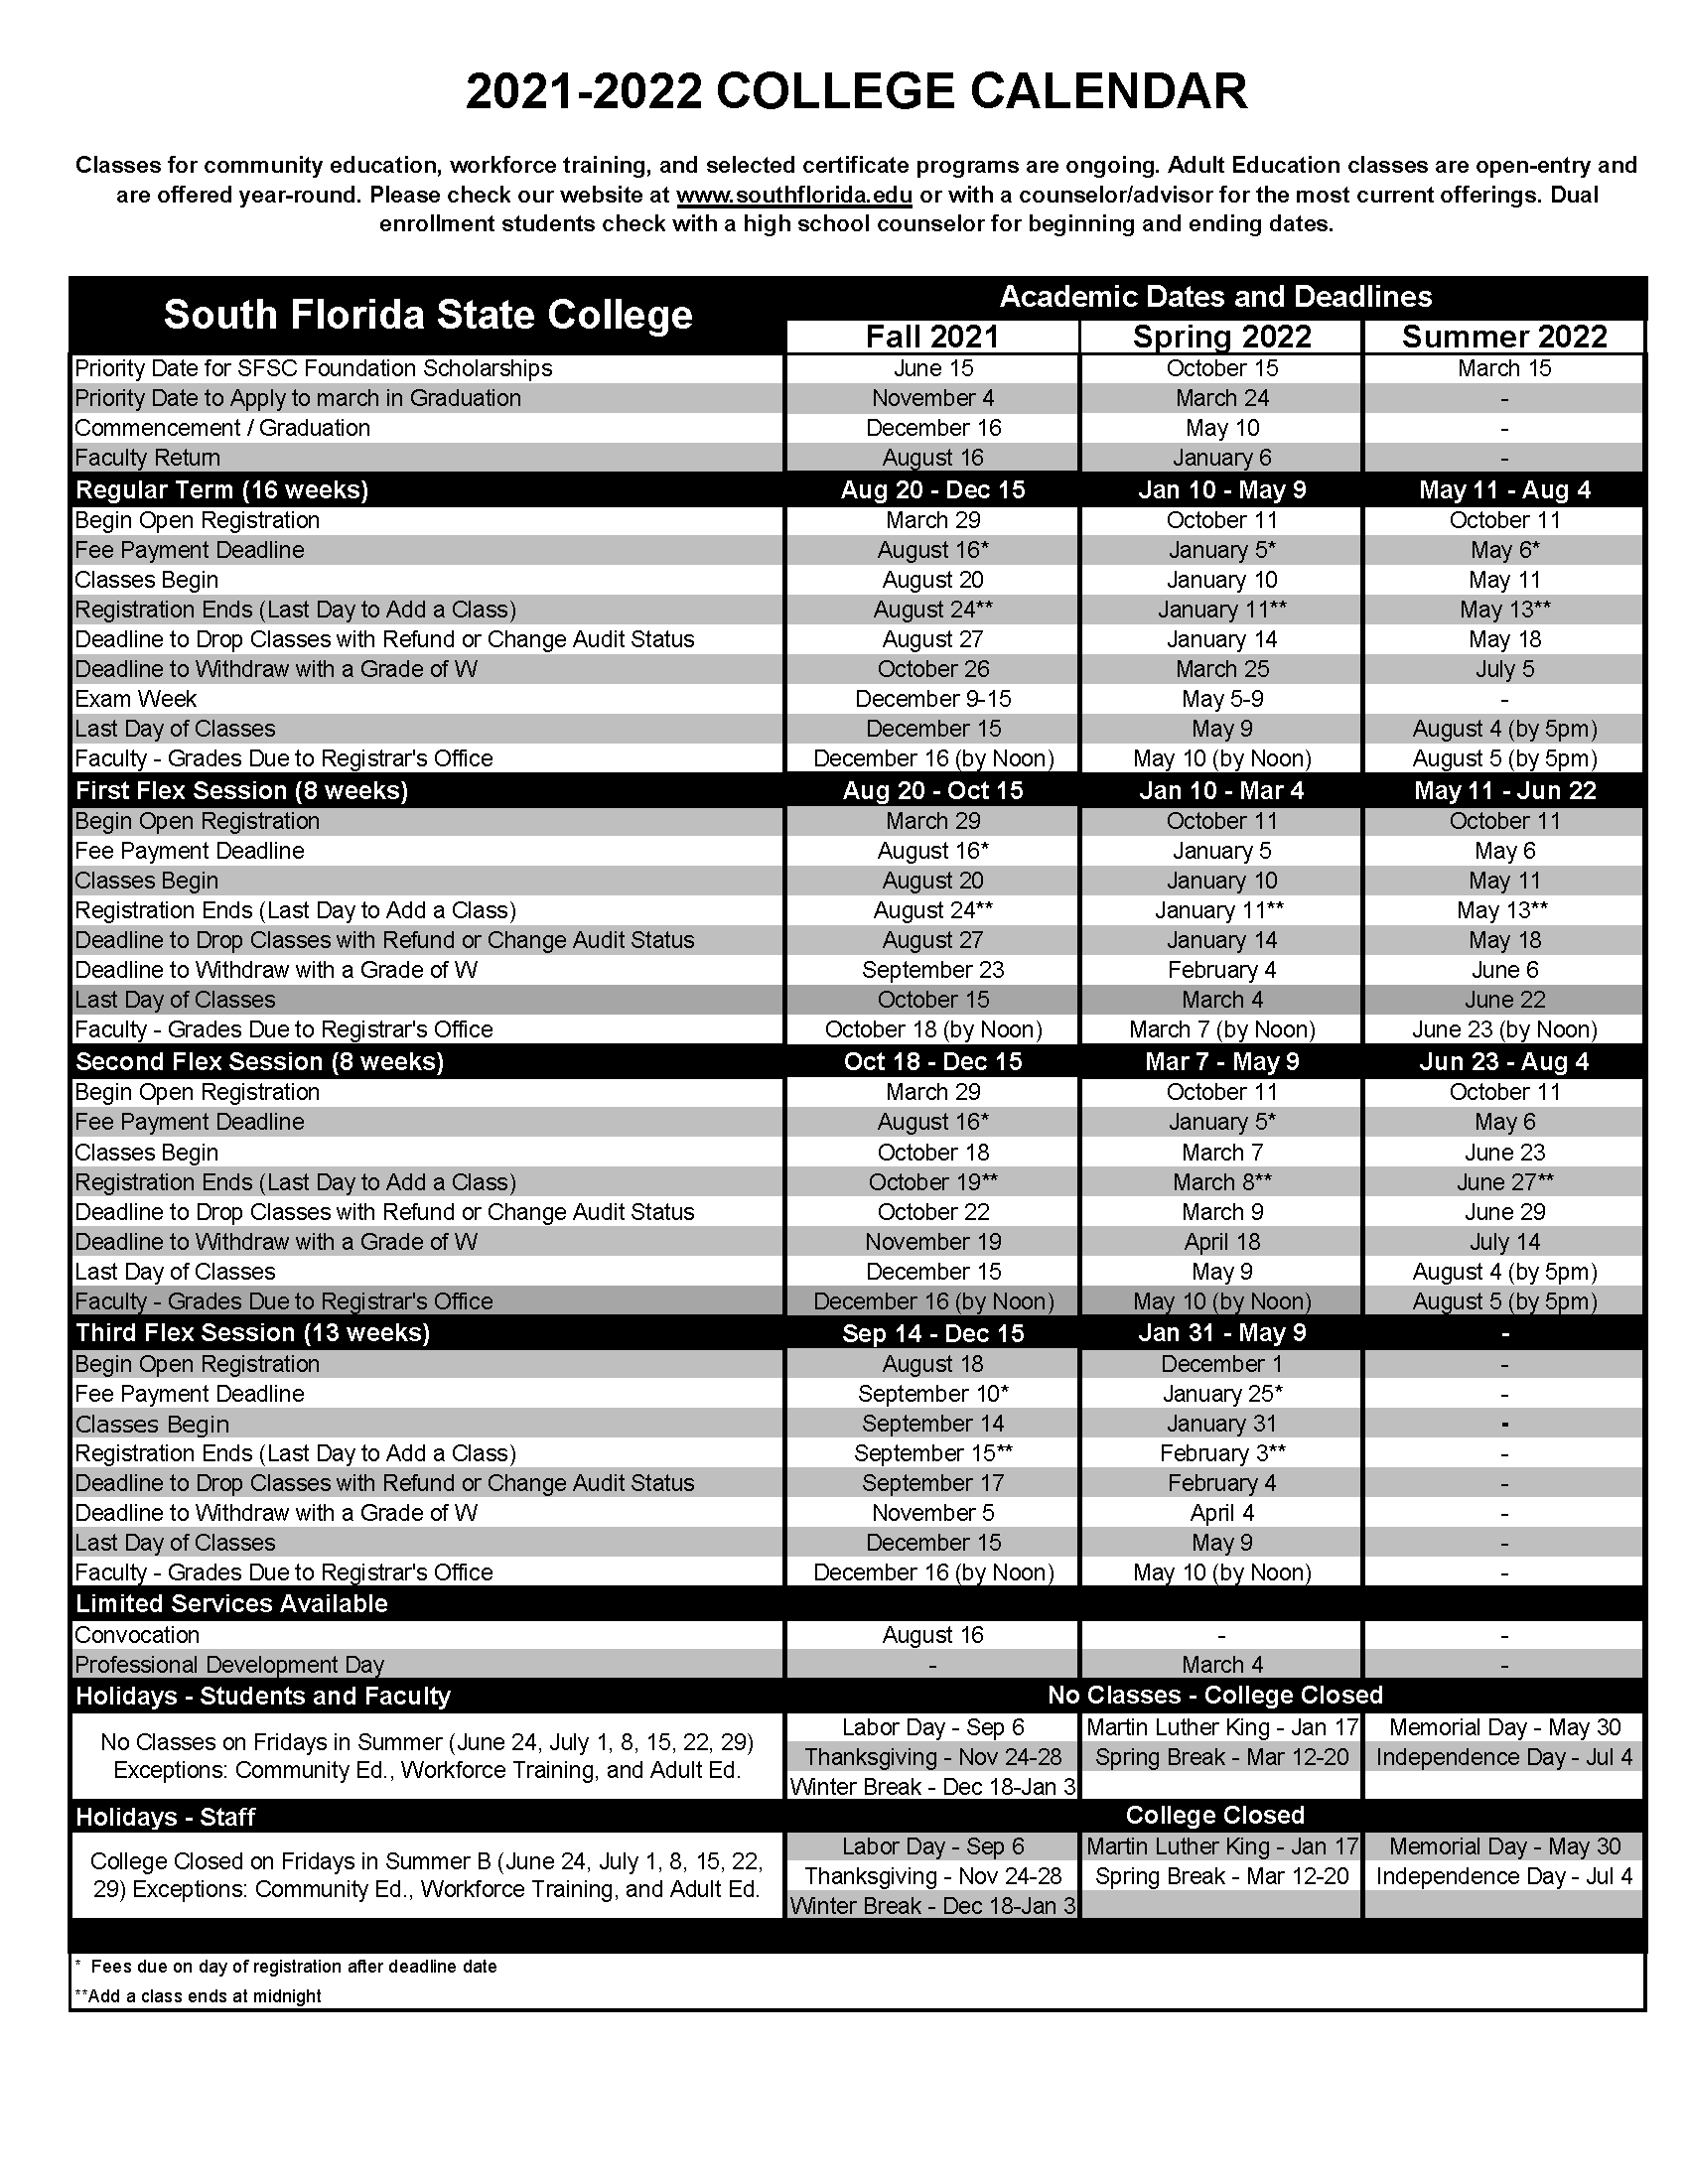 Miami Dade College Calendar 2022 Academic Calendar 2021-2022 - College